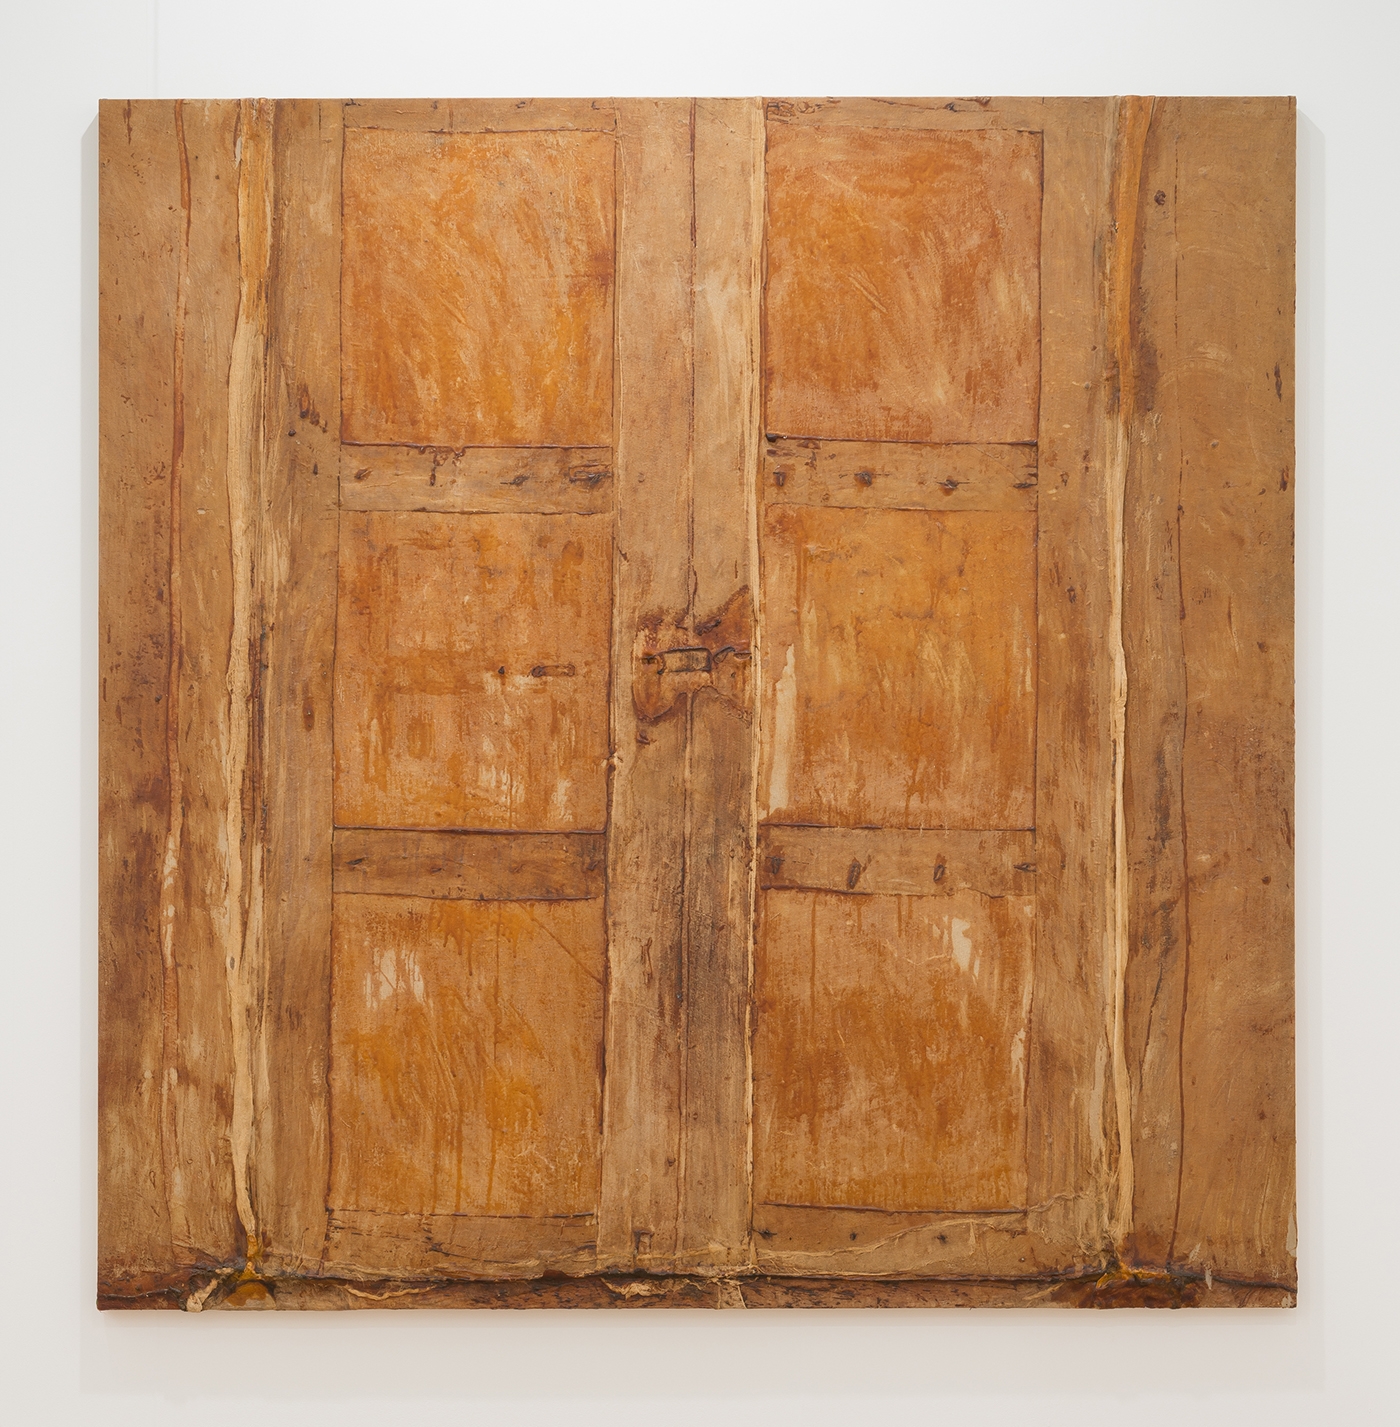 HEIDI BUCHER, Untitled (Puerta beige grande / Large beige door), 1986